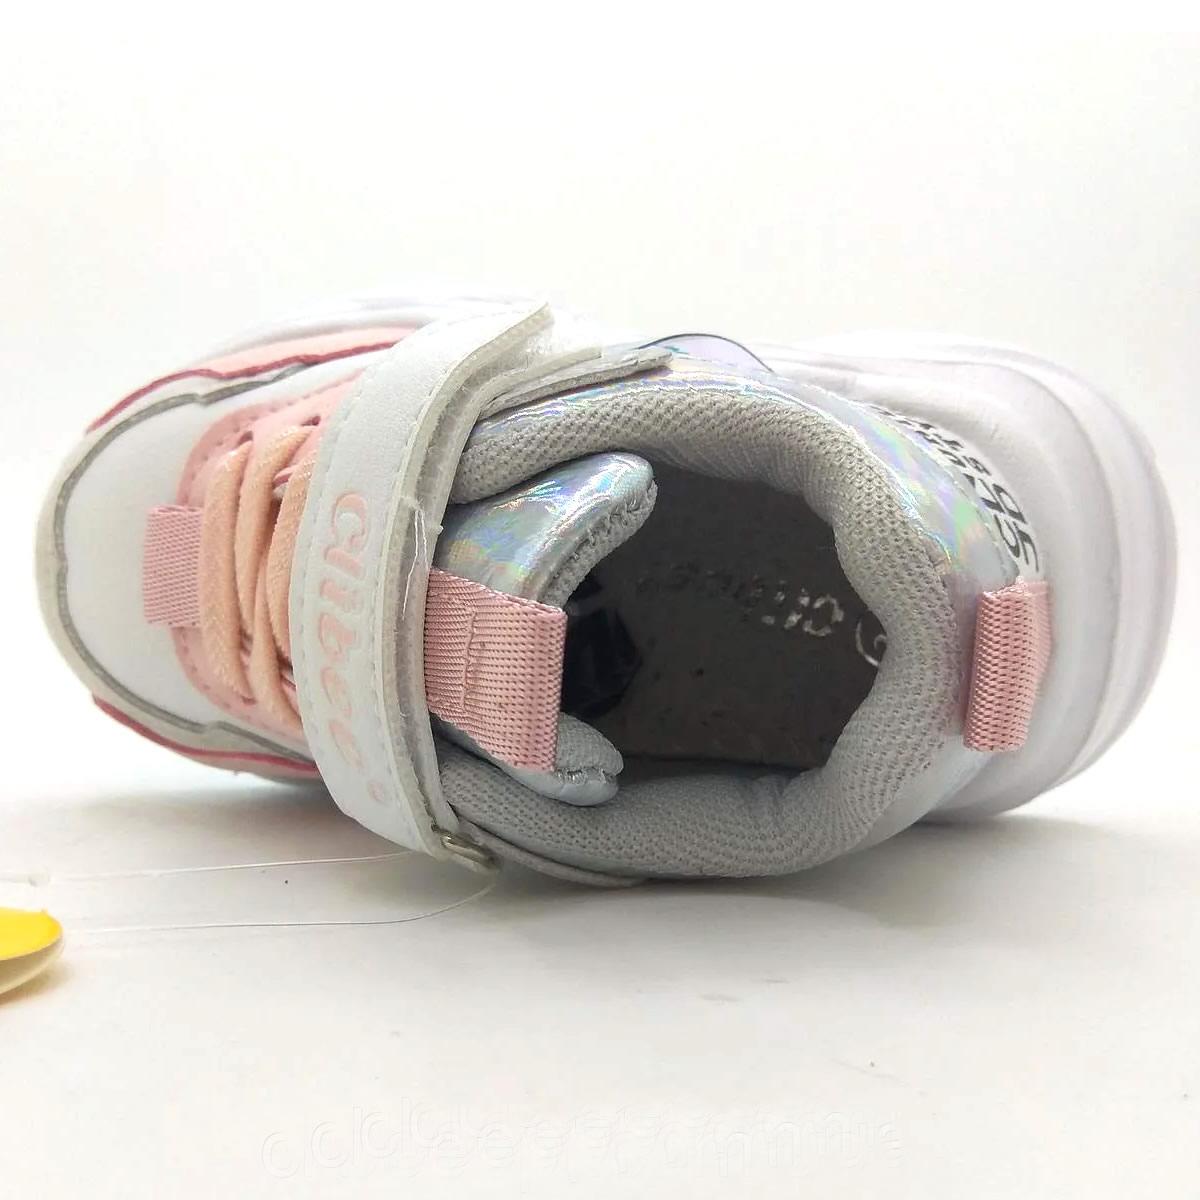 Детские кроссовки для девочки, бело-розовые (L-193), Clibee